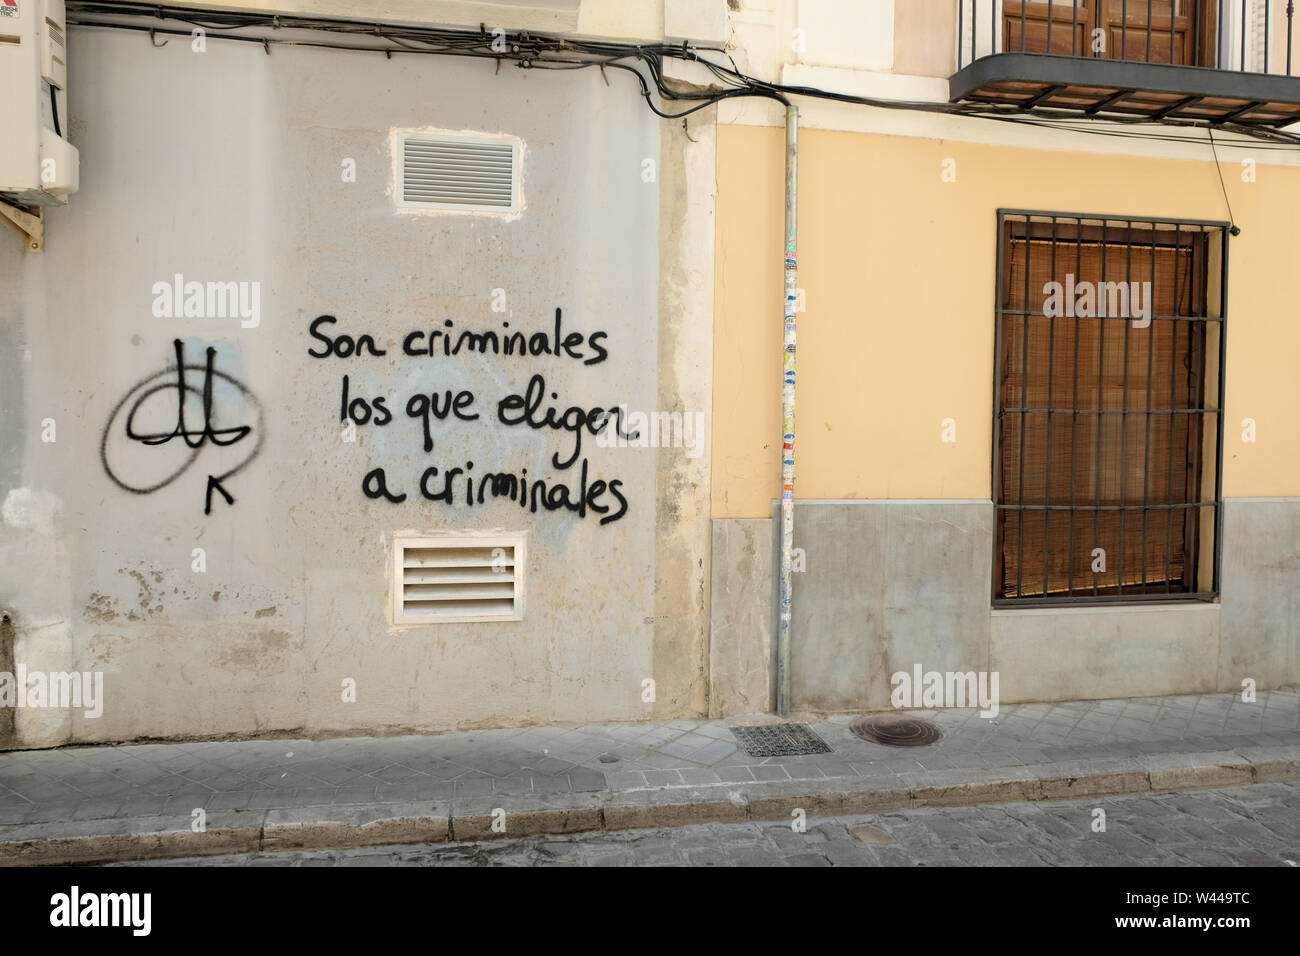 Son criminales los que eligen a criminales: anti-democracy political graffiti accusing voters of electing criminals; corrupt electorate Granada, Spain Stock Photo